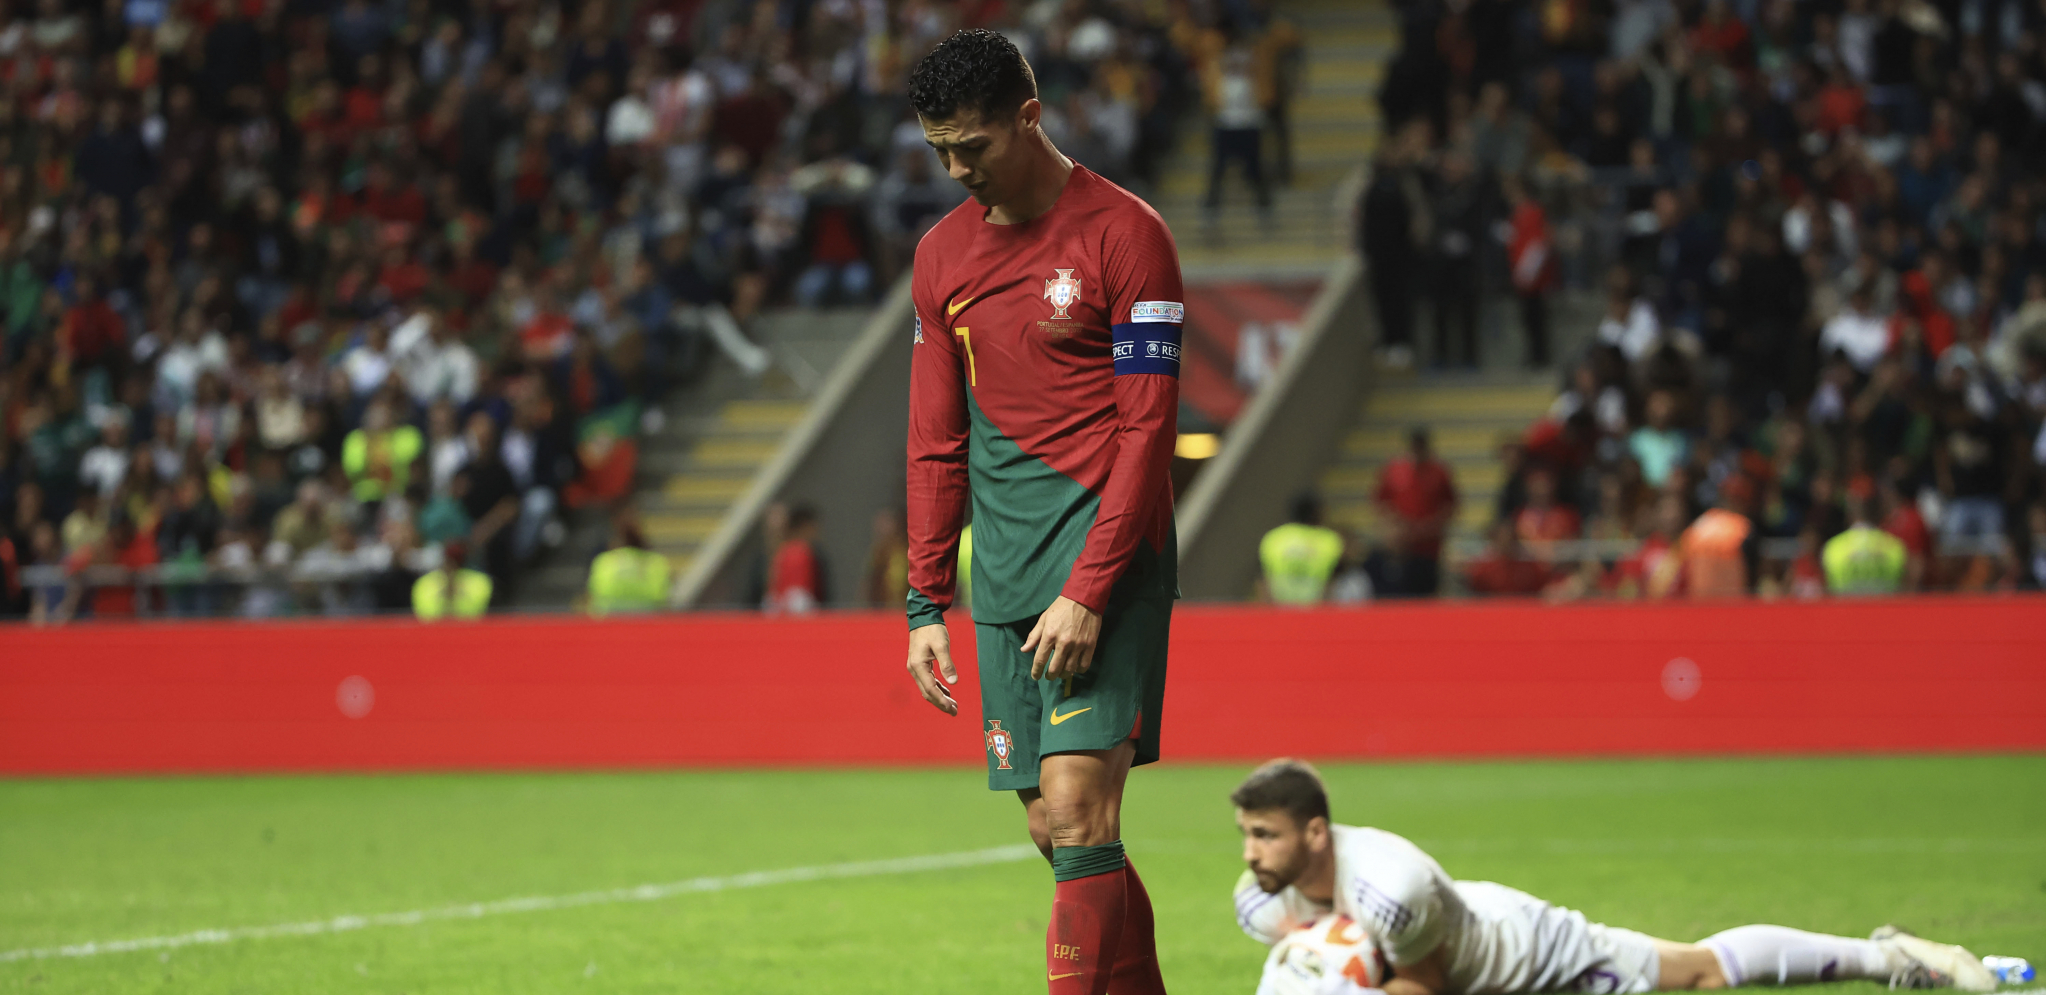 PROBLEMI ZA PORTUGALCE Ronaldo ne igra, stigla potvrda